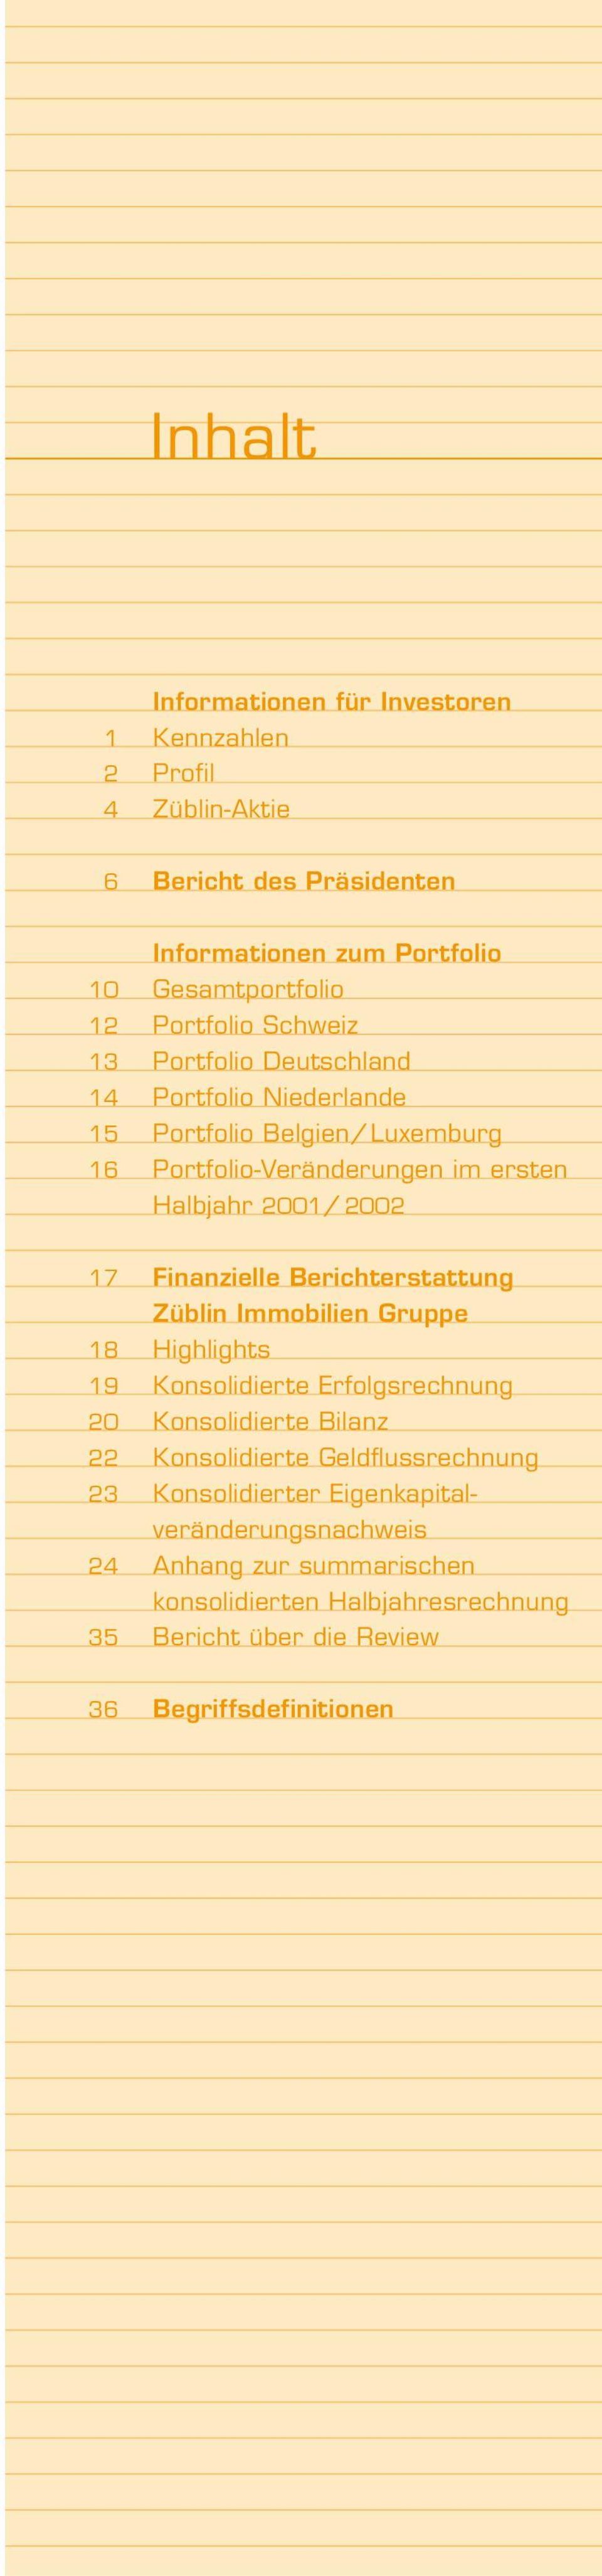 17 Finanzielle Berichterstattung Züblin Immobilien Gruppe 18 Highlights 19 Konsolidierte Erfolgsrechnung 20 Konsolidierte Bilanz 22 Konsolidierte